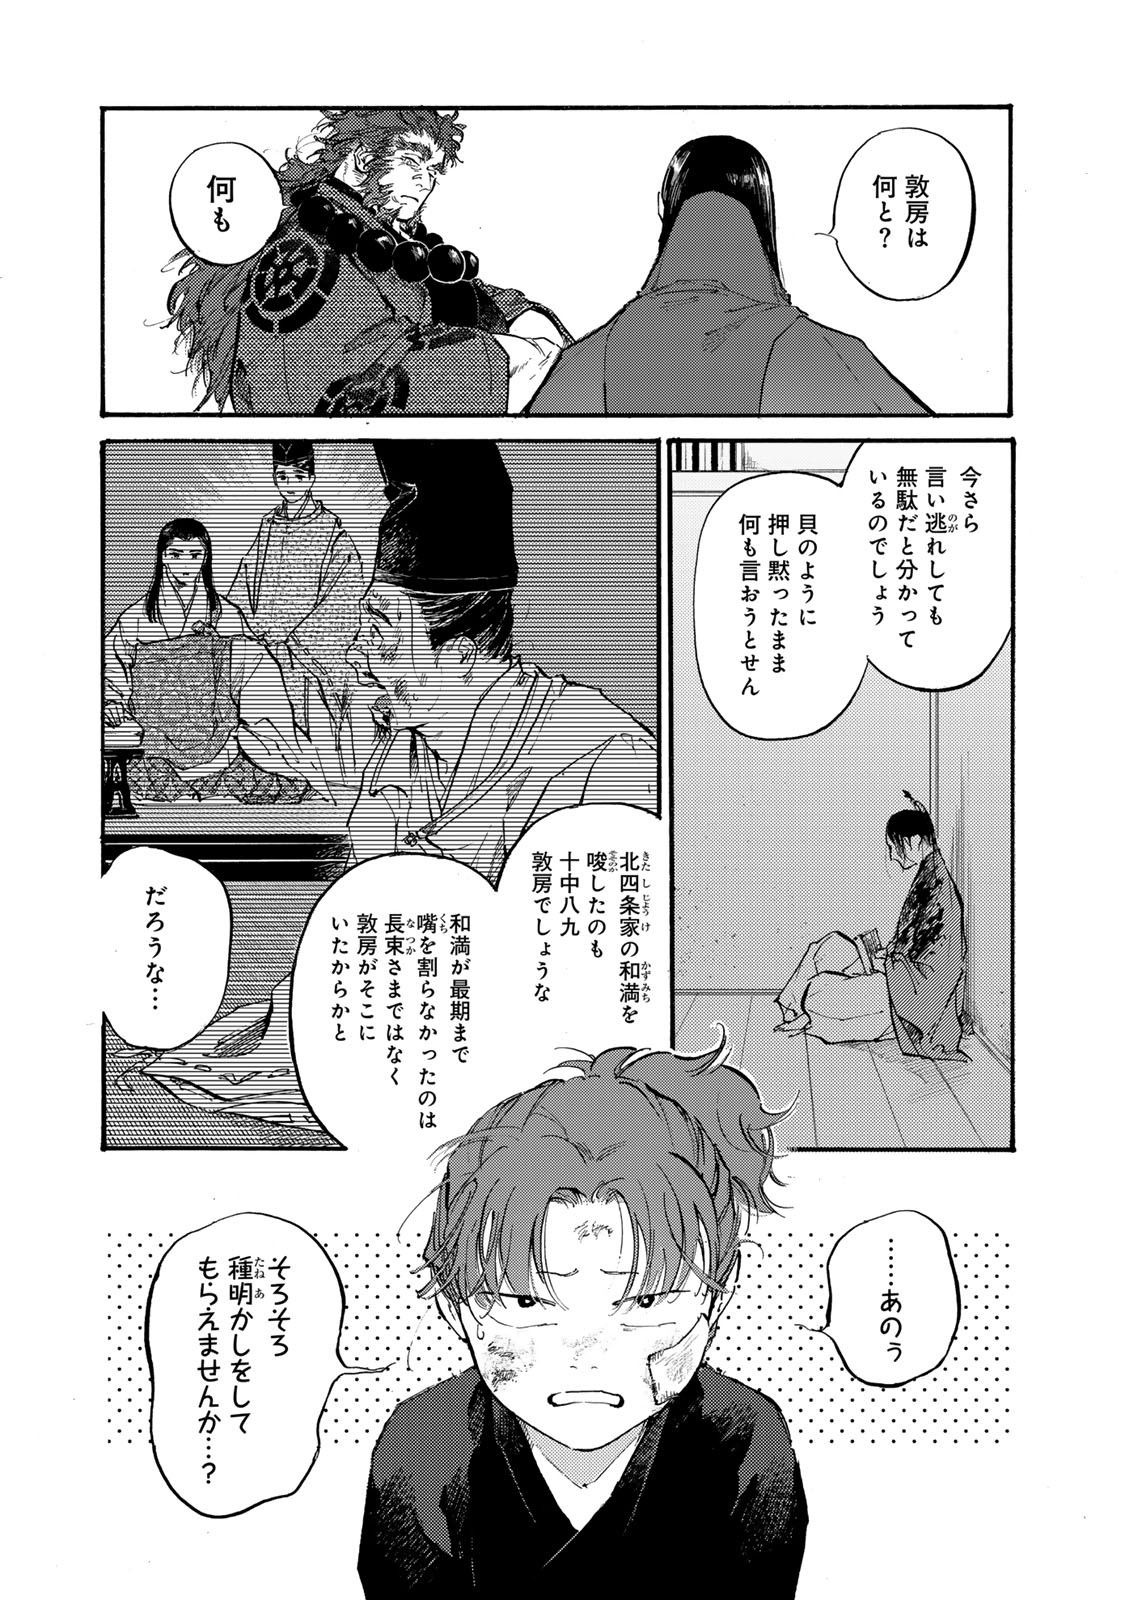 Karasu wa Aruji wo Erabanai - Chapter 43 - Page 3